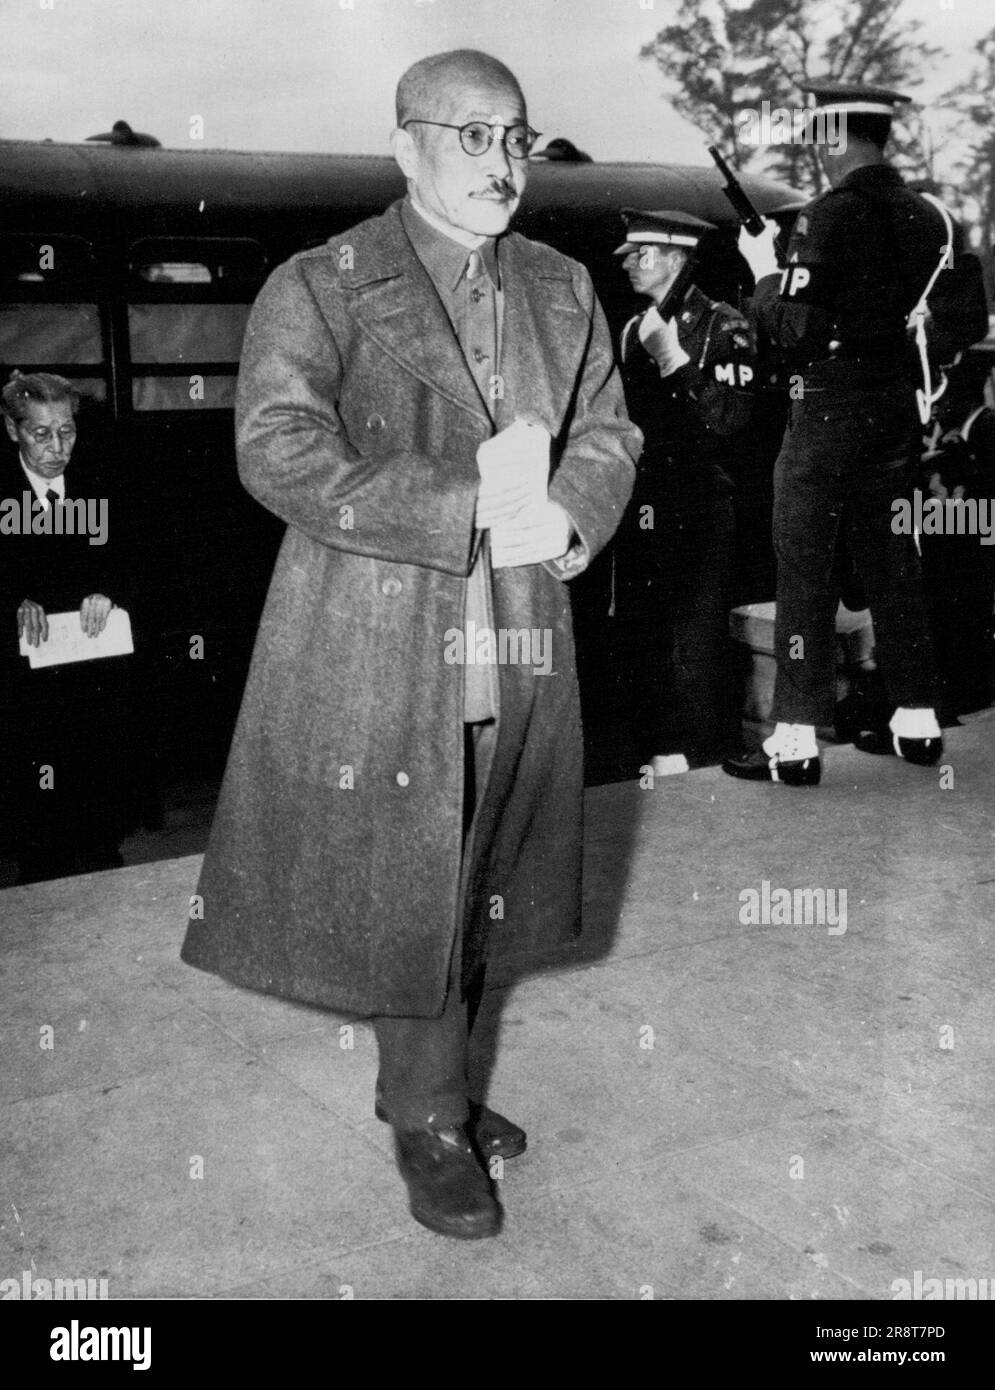 Tojo kommt zur Verurteilung -- Hideki Tojo, ehemaliger Ministerpräsident und Kriegsminister Japans, verlässt einen schwer bewachten Bus am Internationalen Militärgerichtshof im Fernen Osten in Tokio, am 12. November, um das Todesurteil zu hören. 14. November 1948. (Foto von AP Wirephoto). Stockfoto